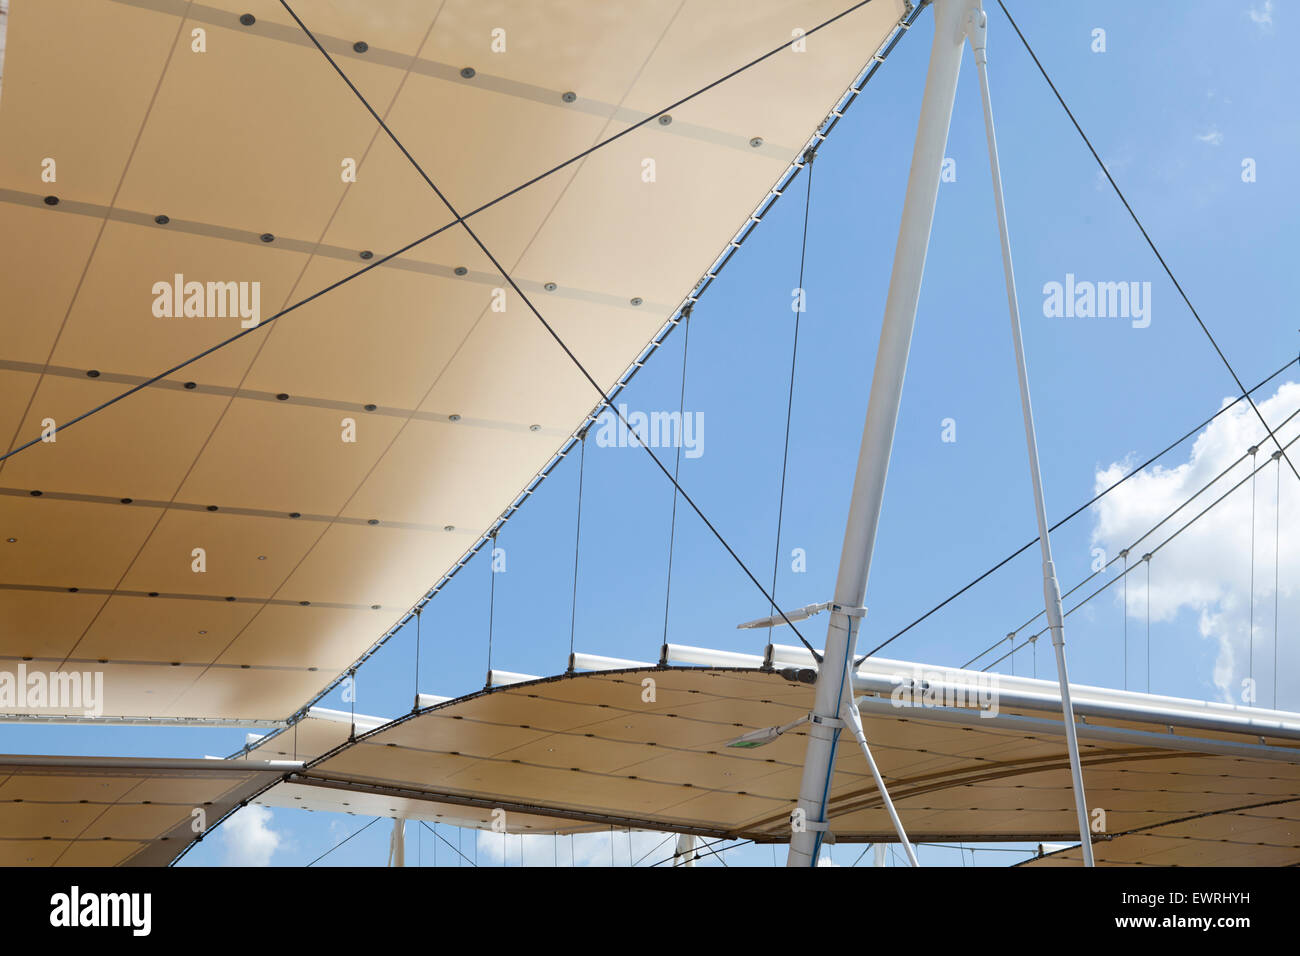 Dettaglio dell'architettura del tetto vele all'Expo 2015 di Milano, Italia Foto Stock